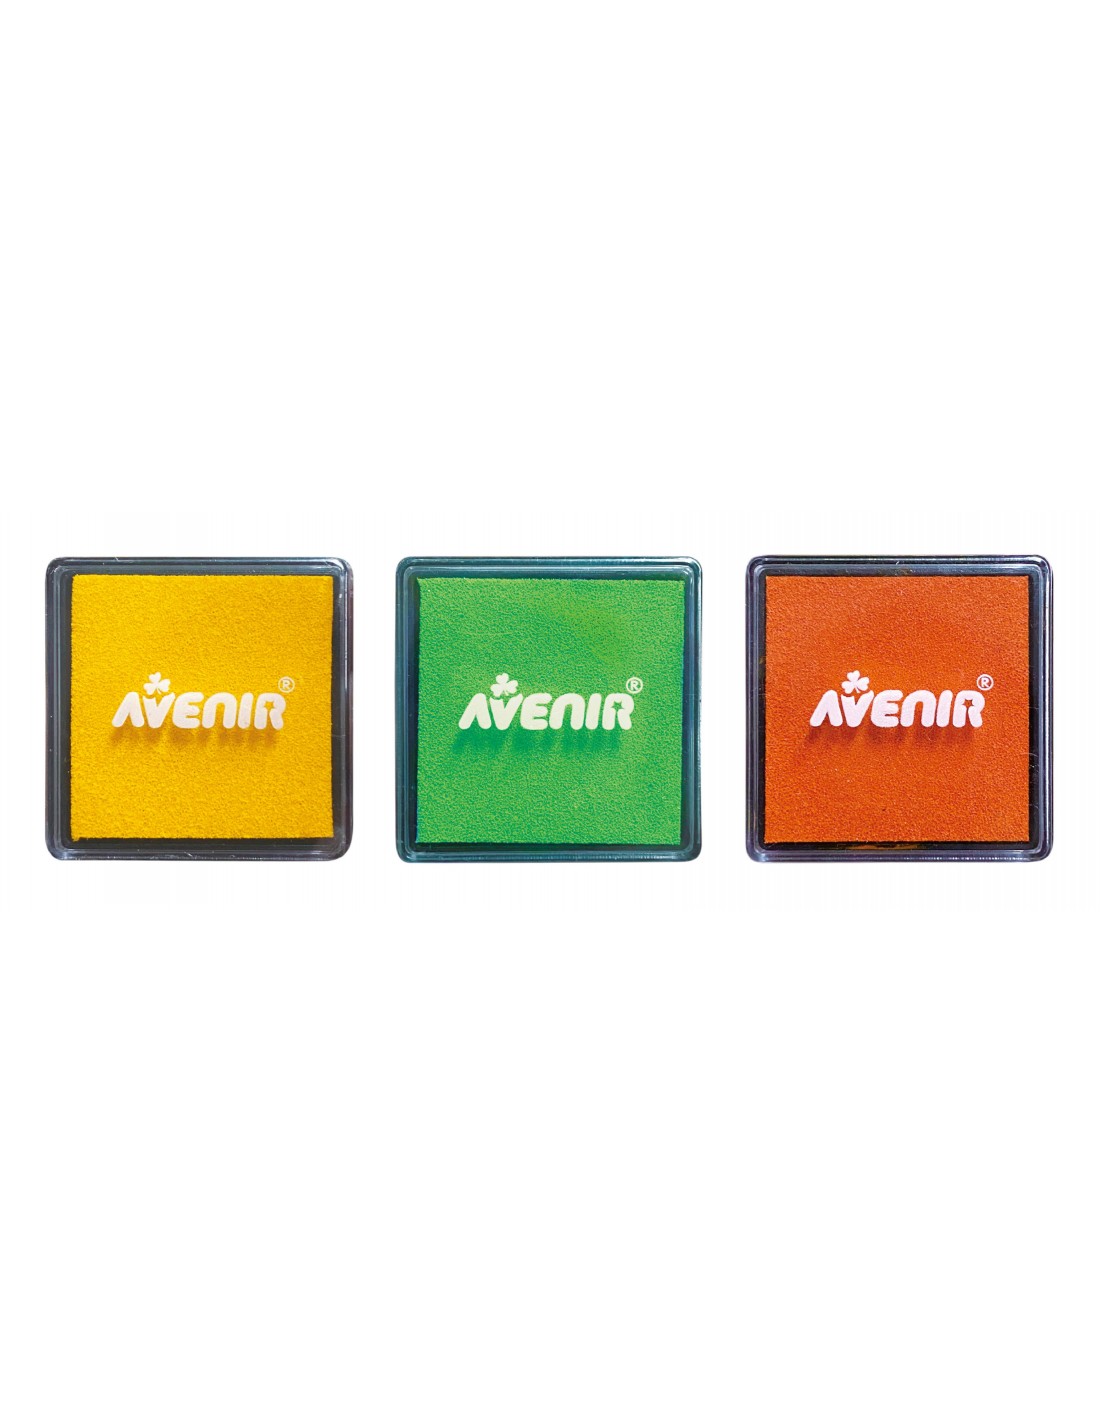 Avenir Stamp And Match-Create Little Bugs 60739 - Avenir